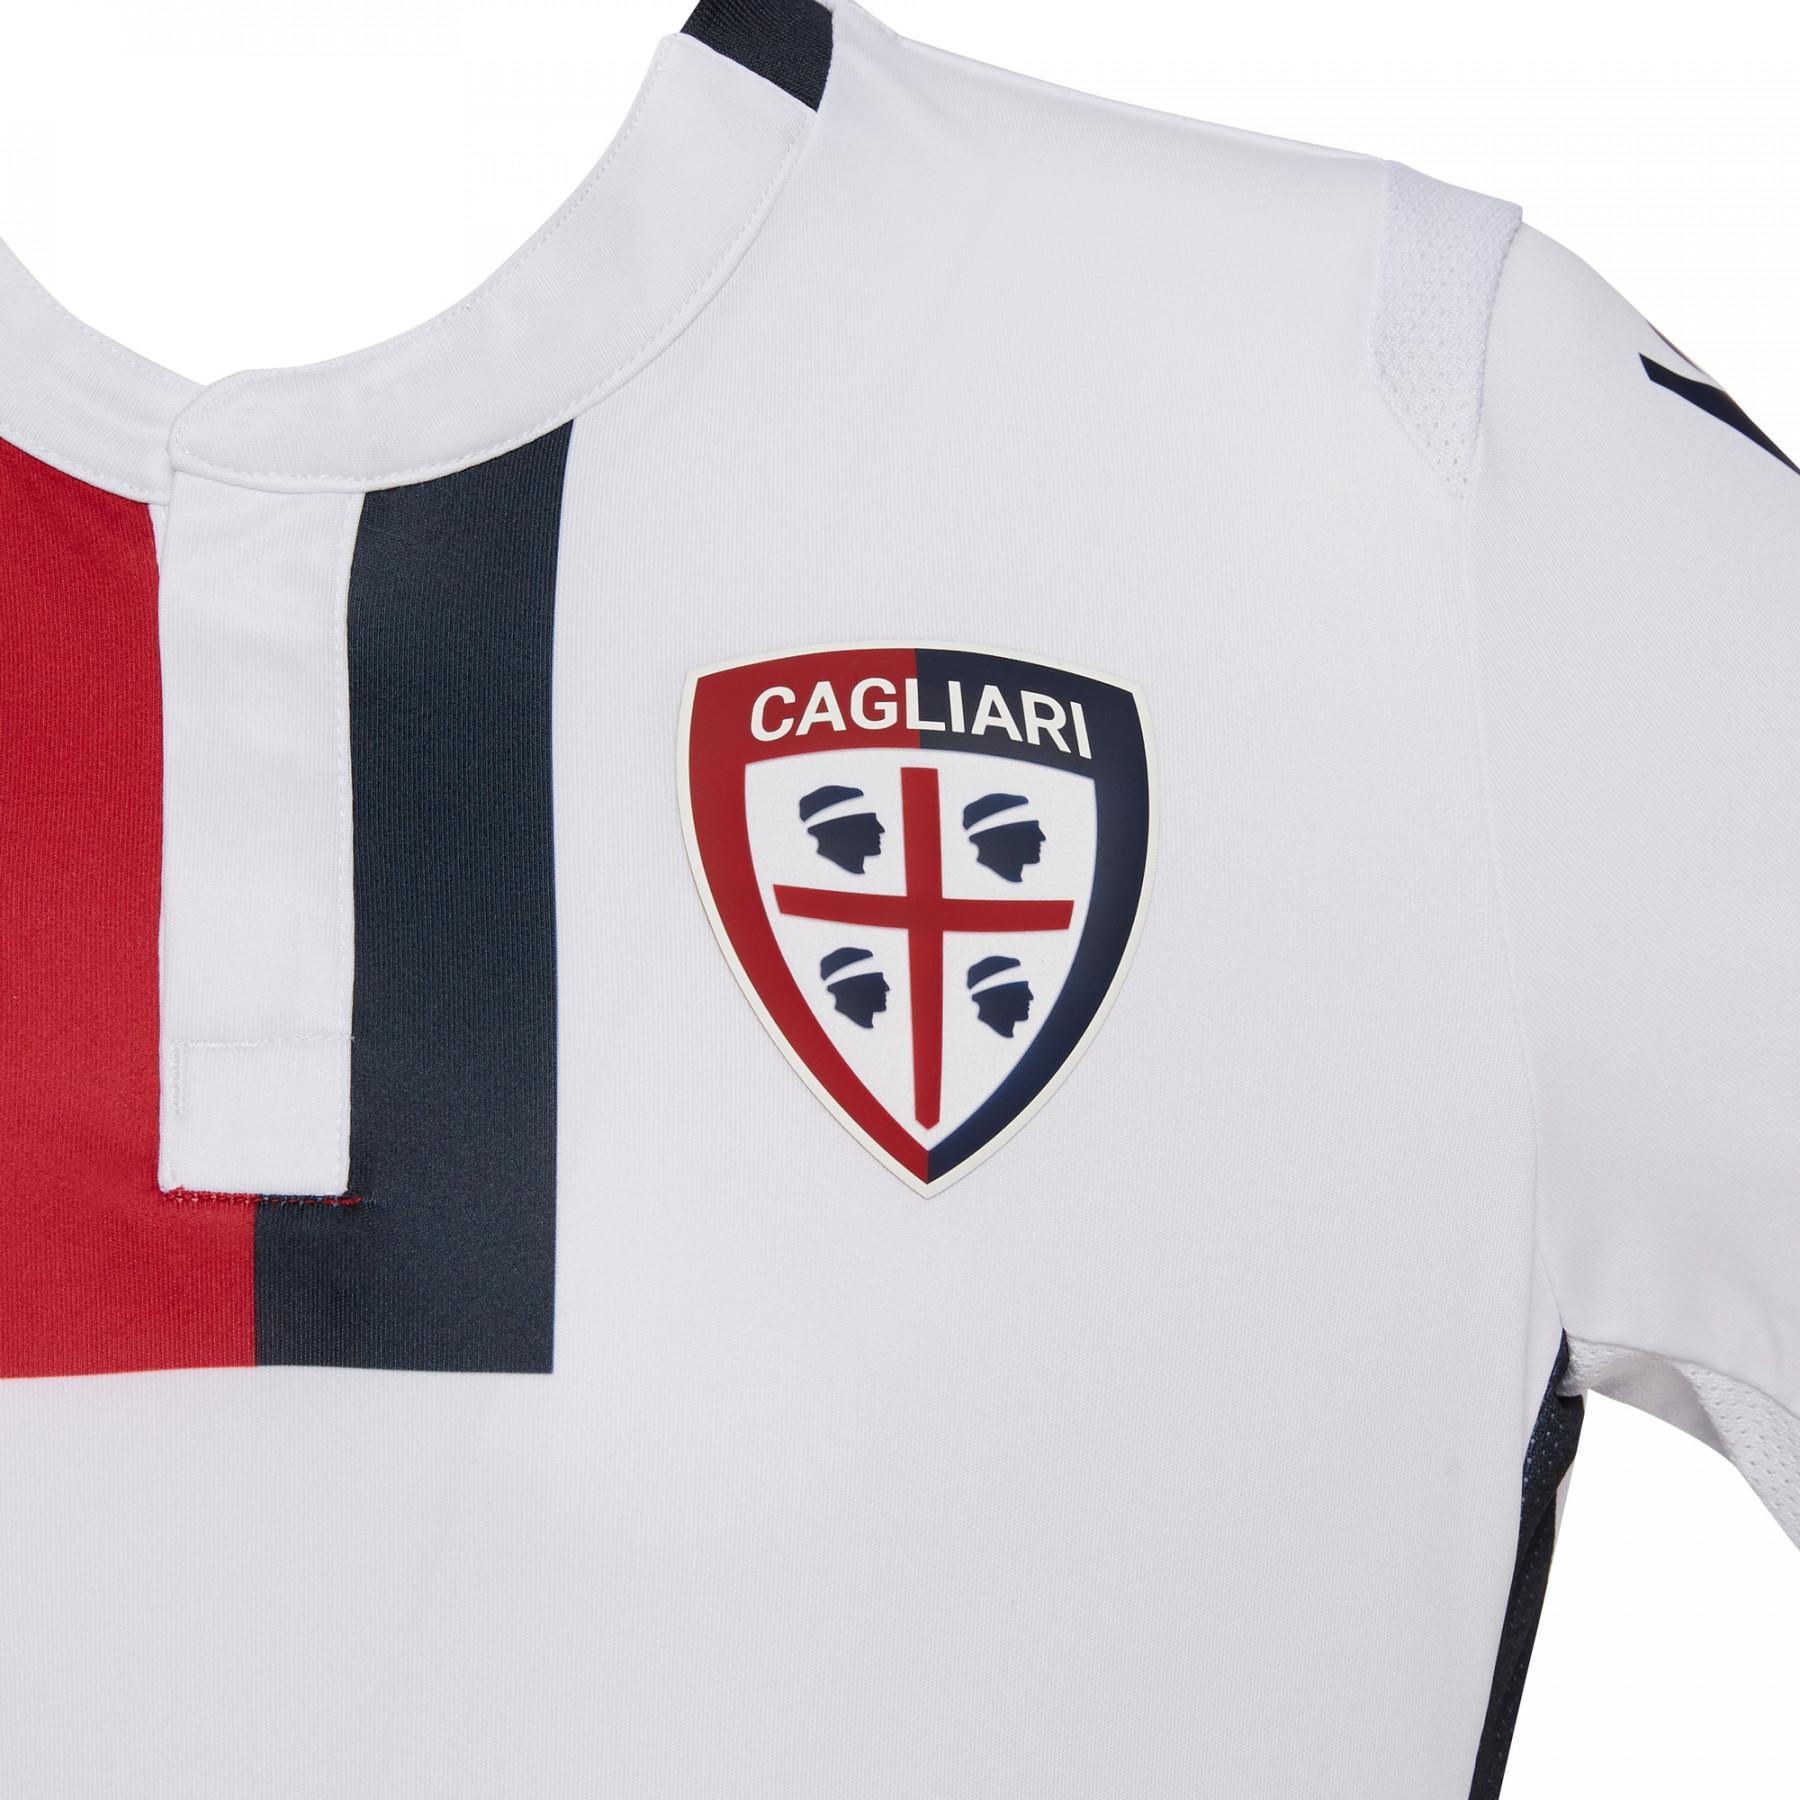 Mini-kit extérieur Cagliari 2018/19